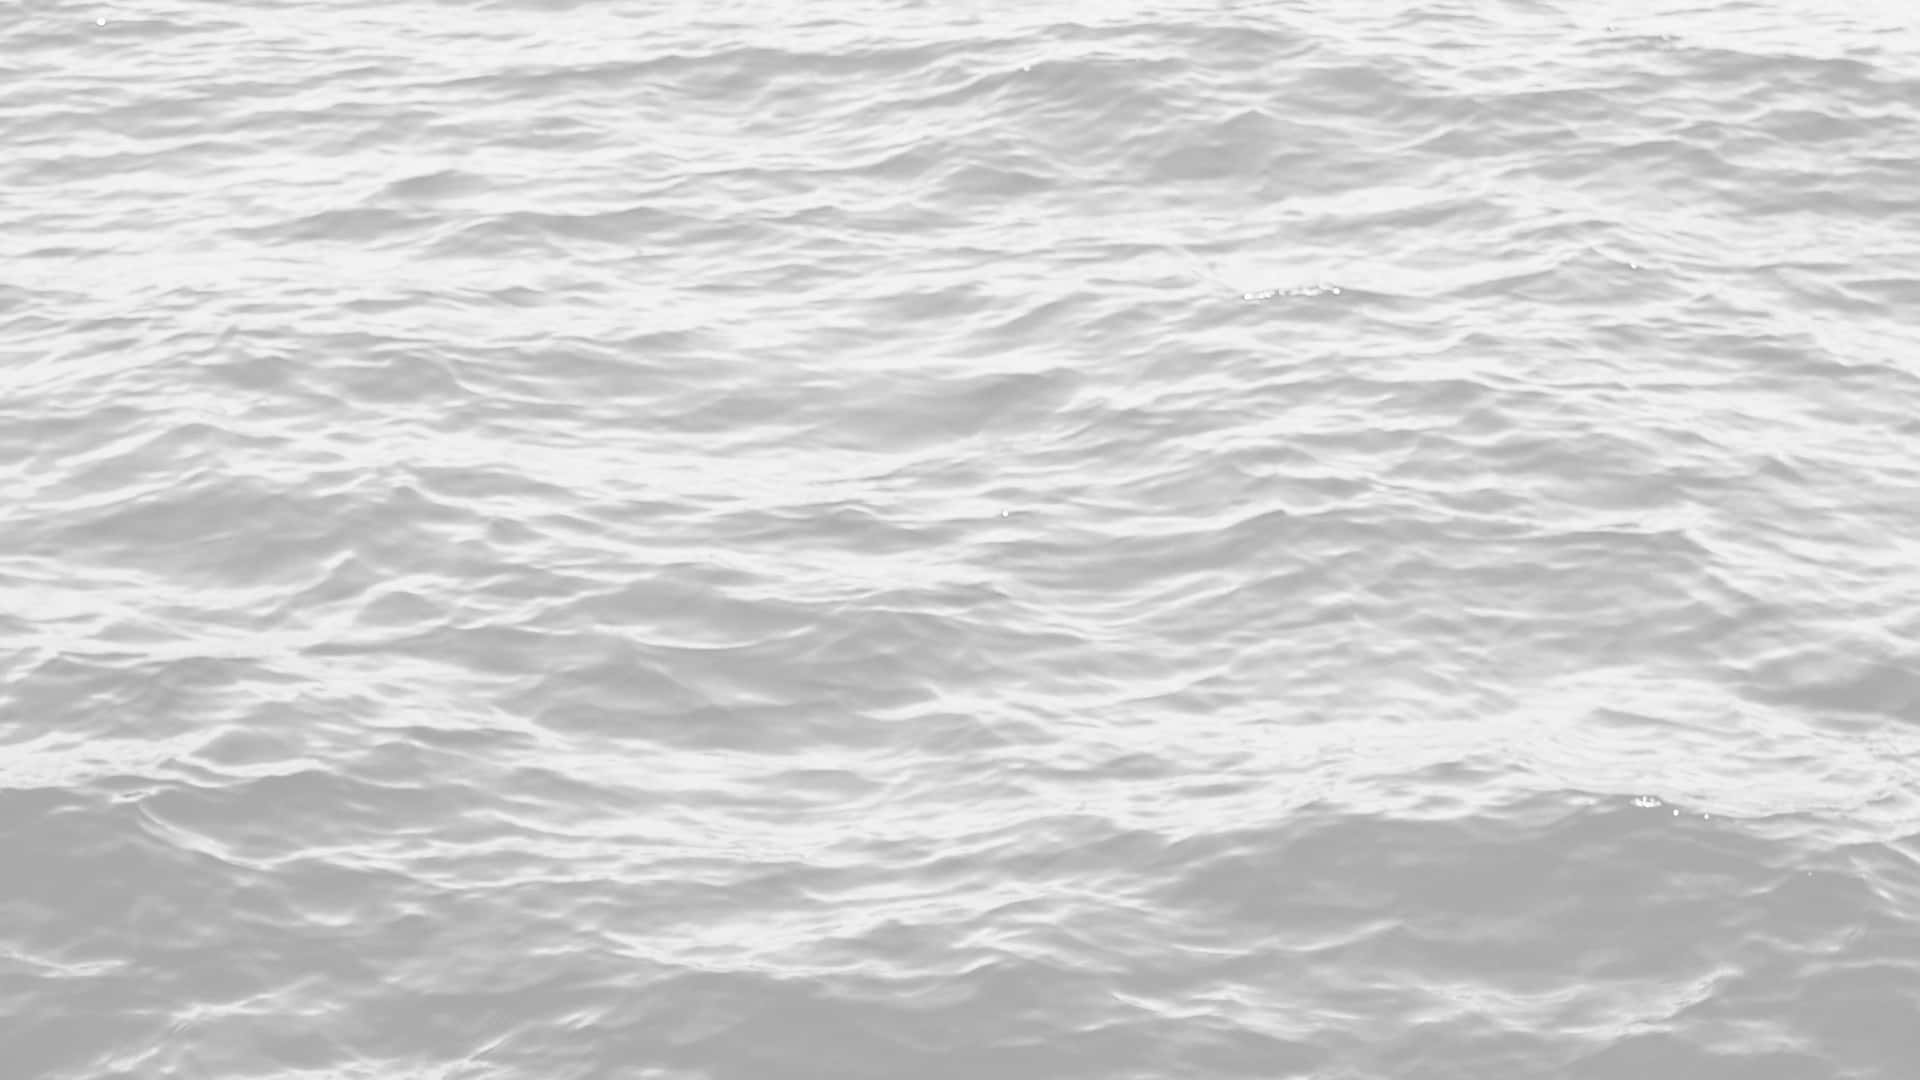 Ahorapodrás Disfrutar De Impresionantes Olas Del Océano En Blanco Y Negro. Fondo de pantalla